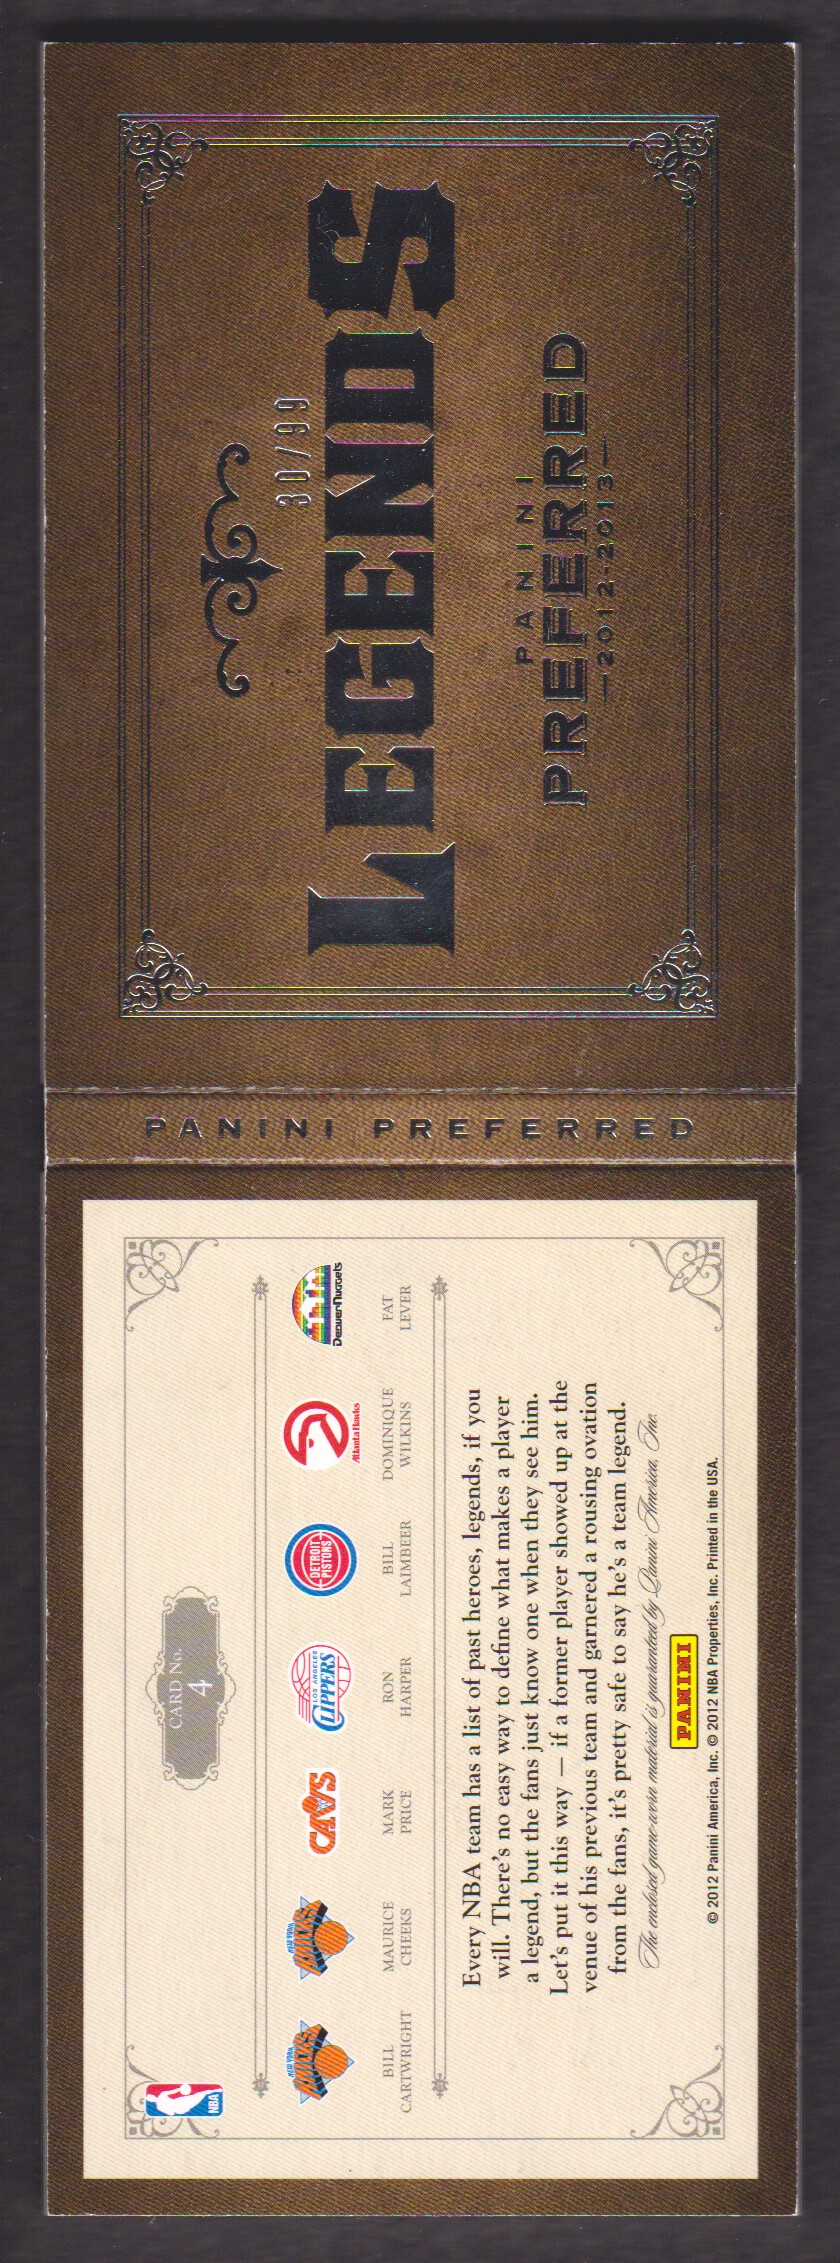 2012-13 Panini Preferred Legends Memorabilia #4 Bill Cartwright/99/Maurice Cheeks/Mark Price/Bill Laimbeer/Ron Harper/Dominique Wilkins/Fat Lever back image